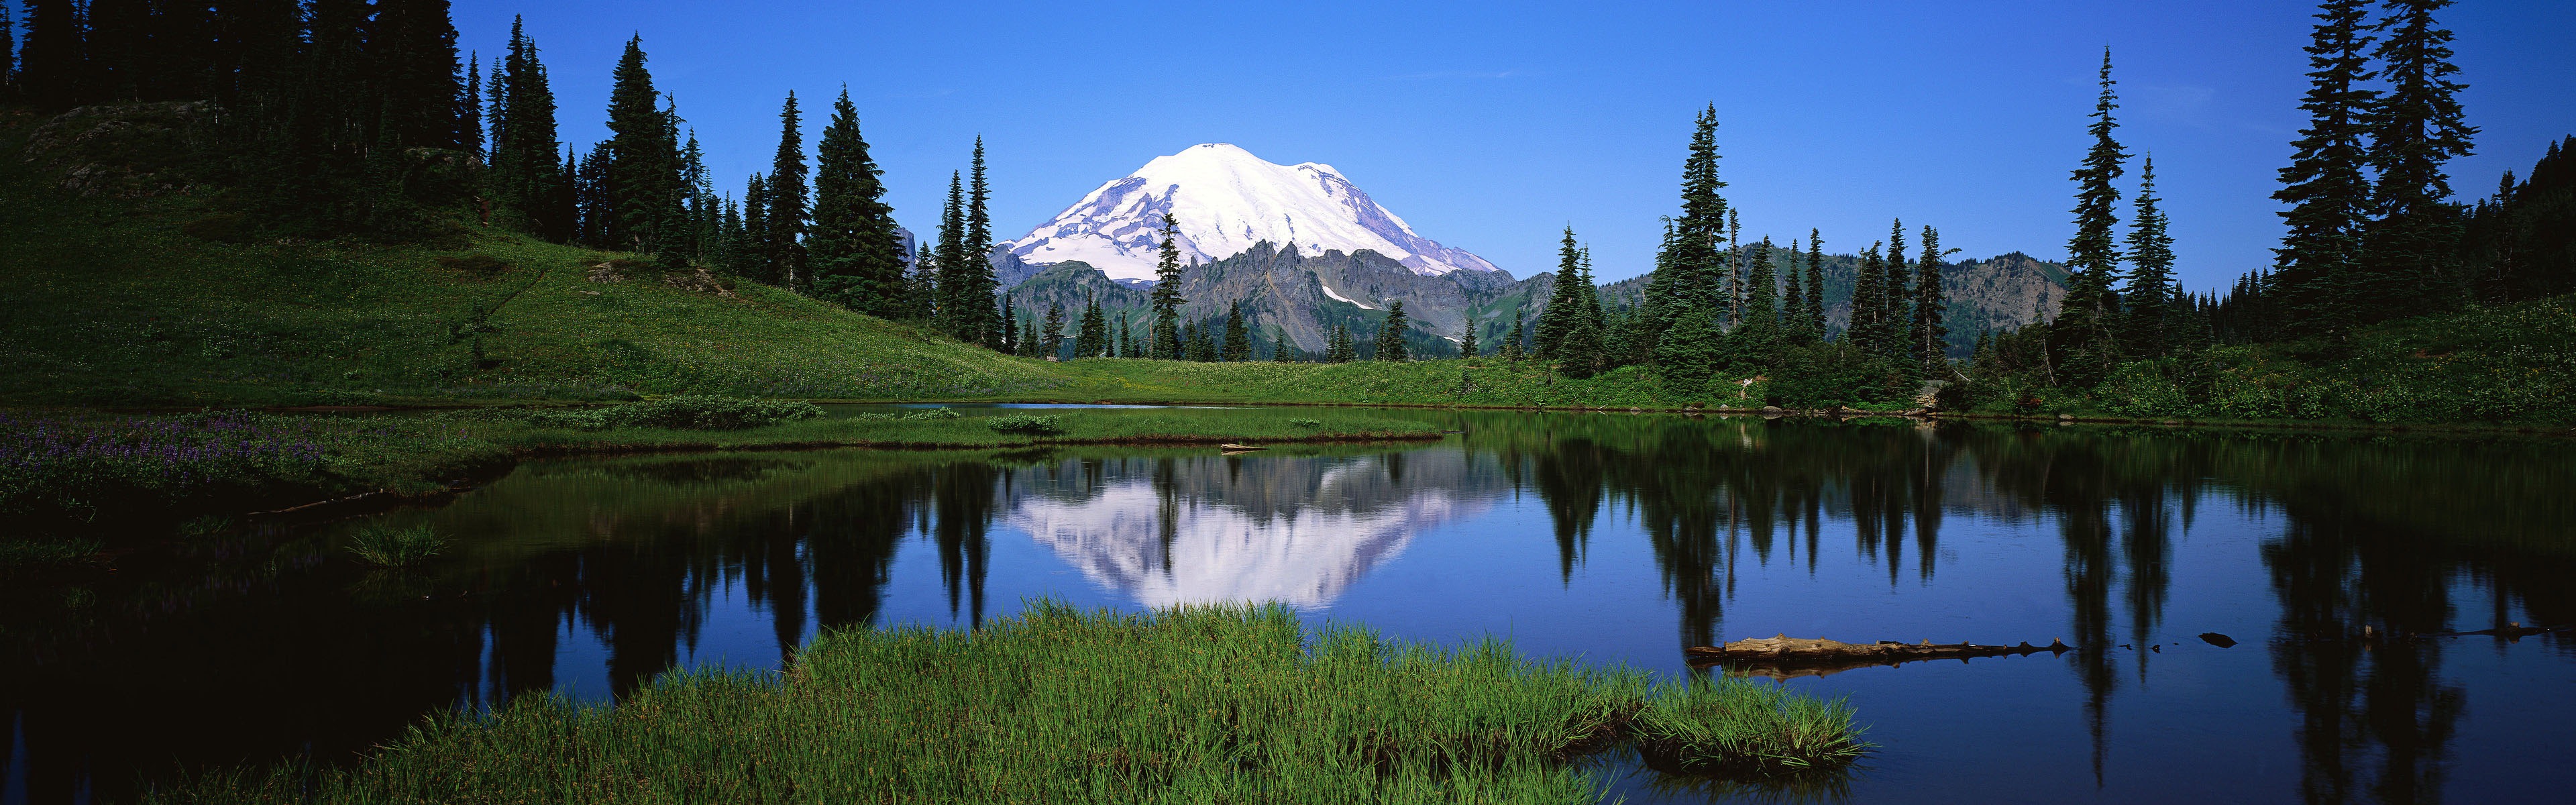 Windows 8 официальные панорамные обои, волны, лесов, величественных гор #18 - 3840x1200